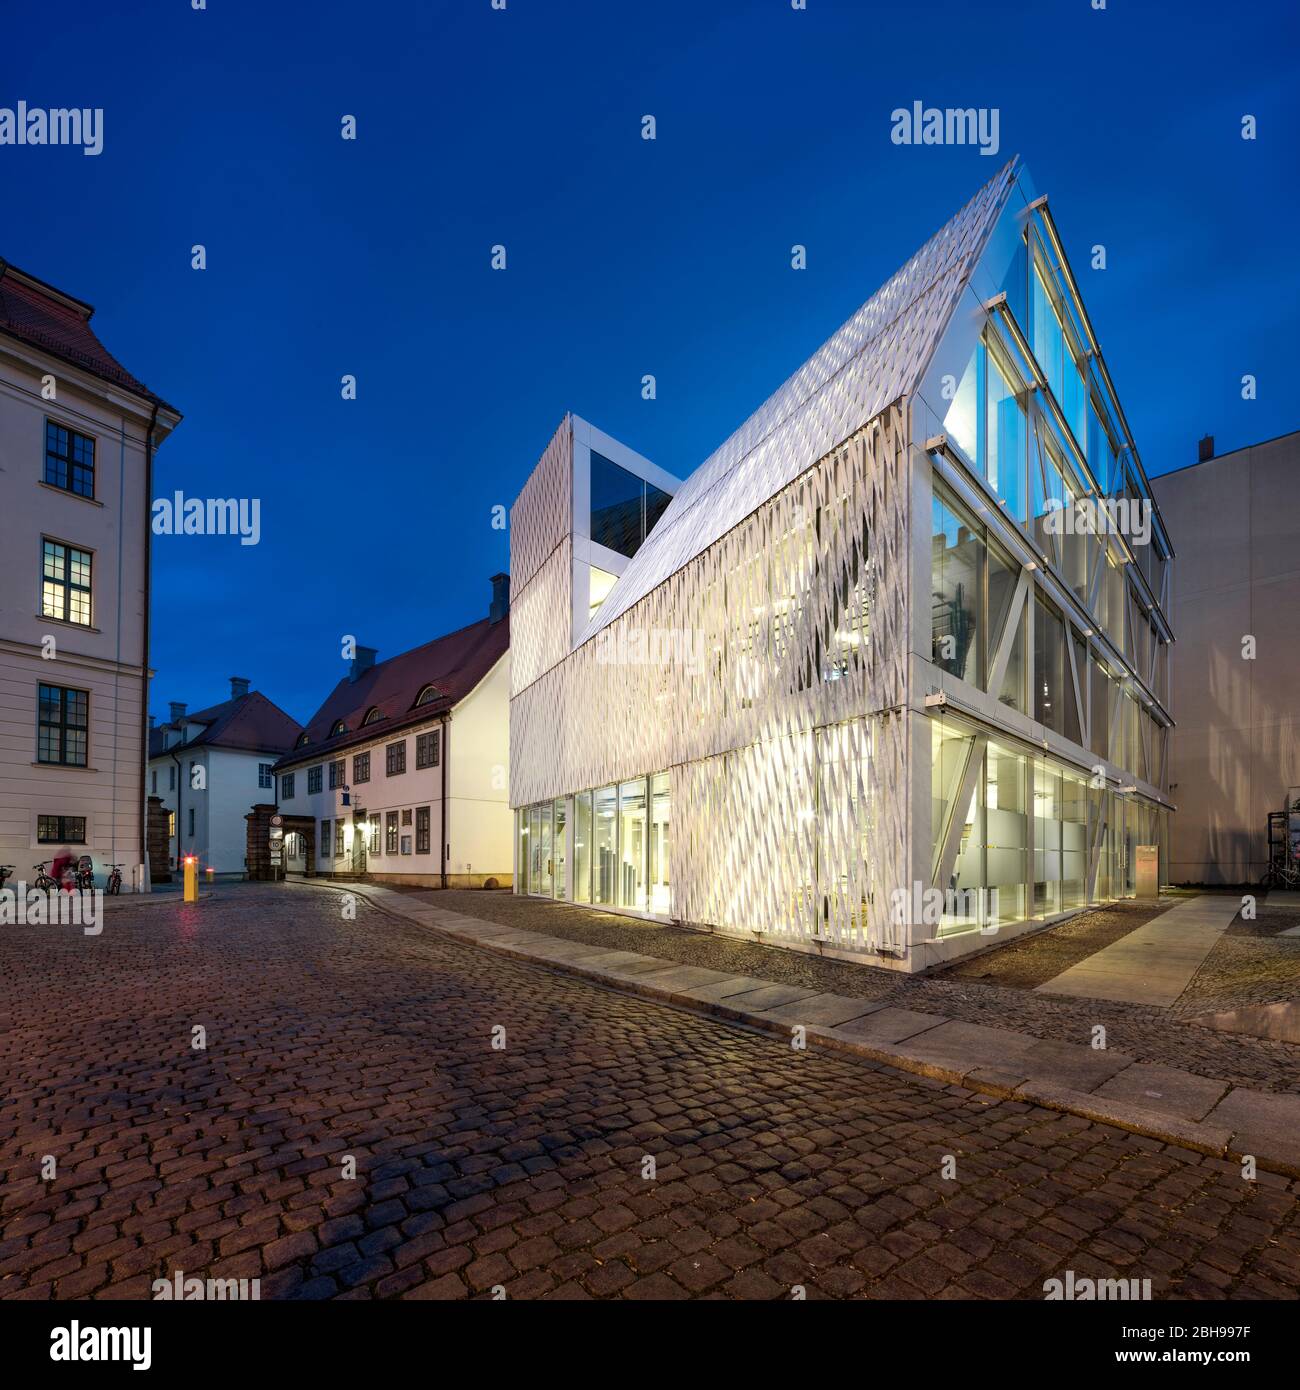 Fondation culturelle éclairée du gouvernement fédéral, au crépuscule, Halle an der Saale, Saxe-Anhalt, Allemagne Banque D'Images